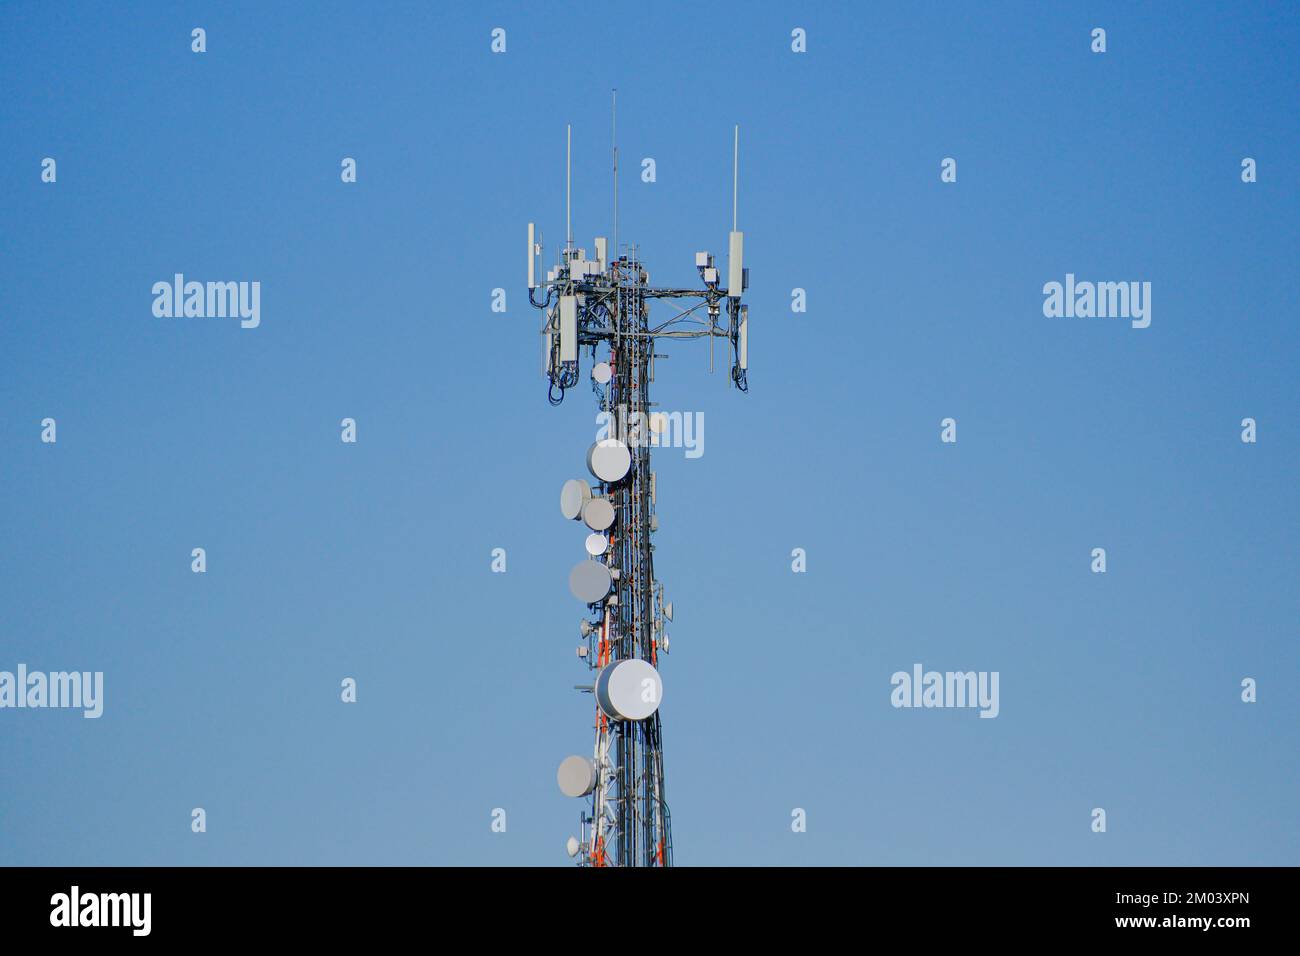 Antenna rf immagini e fotografie stock ad alta risoluzione - Alamy